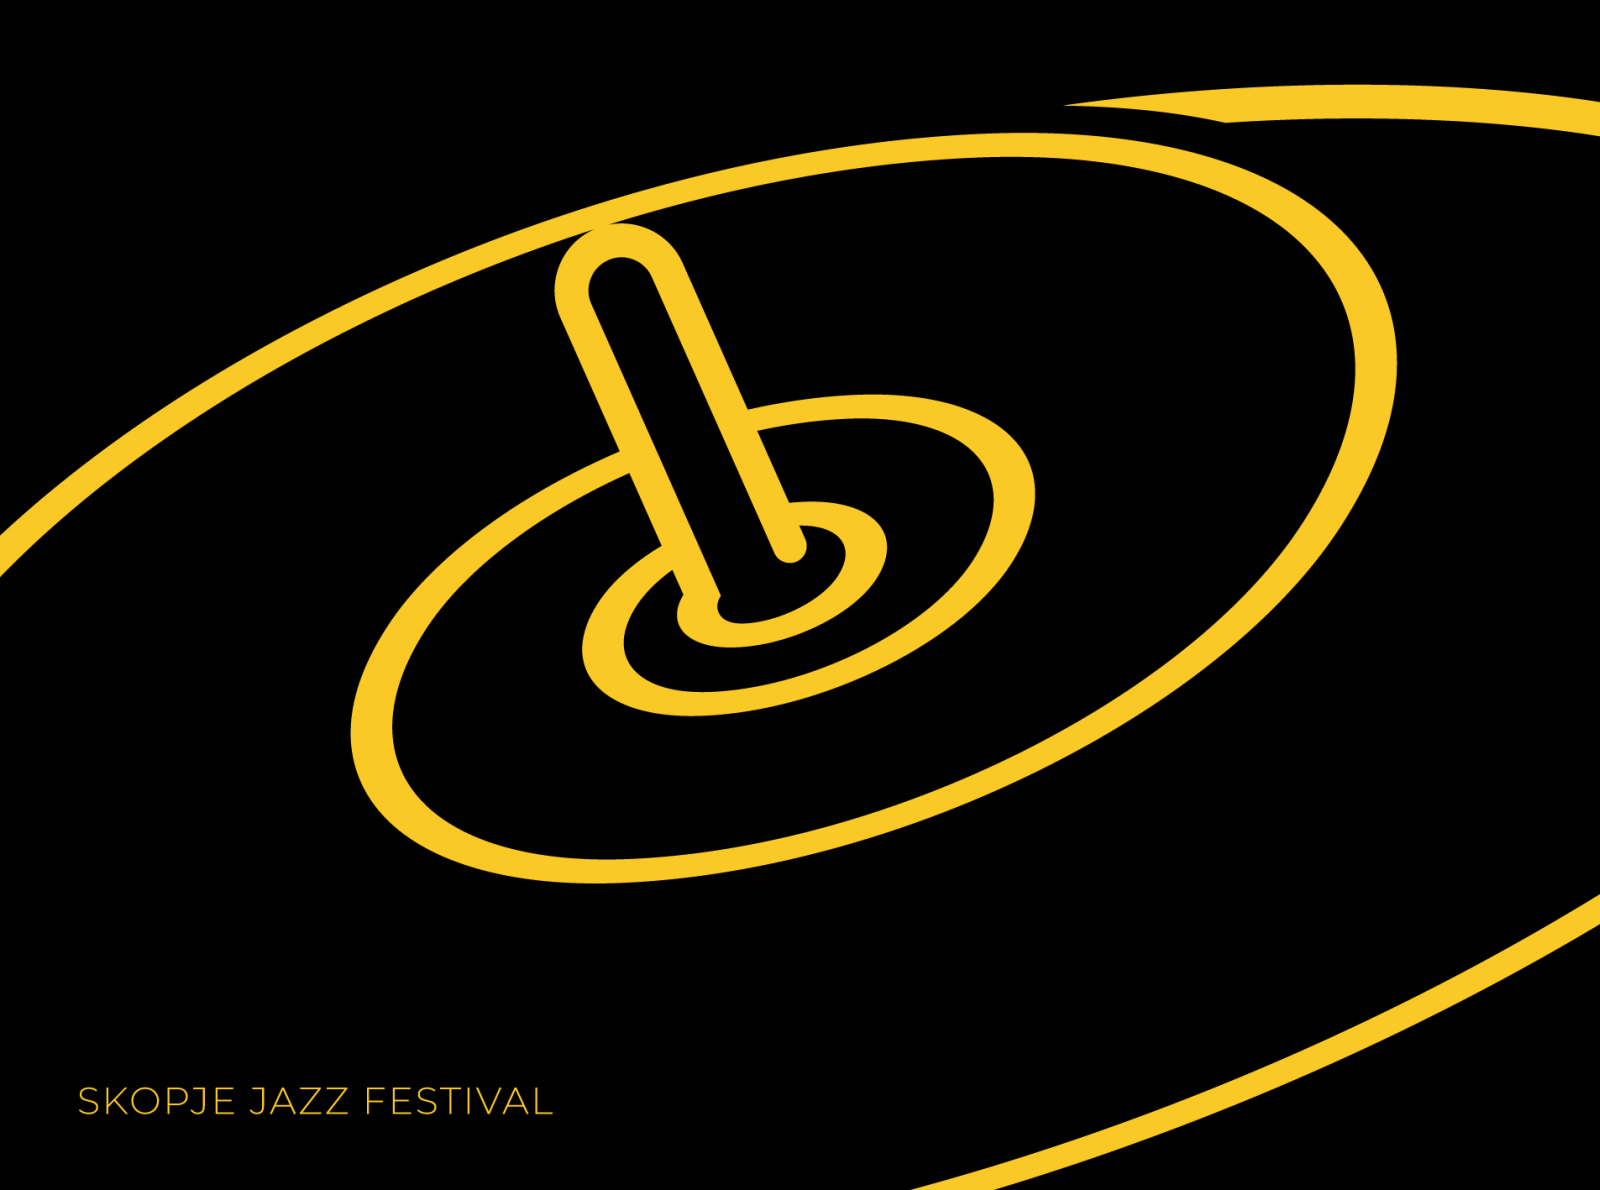 Skopje Jazz Festival - Poster design by Aleksandar Popovski on Dribbble